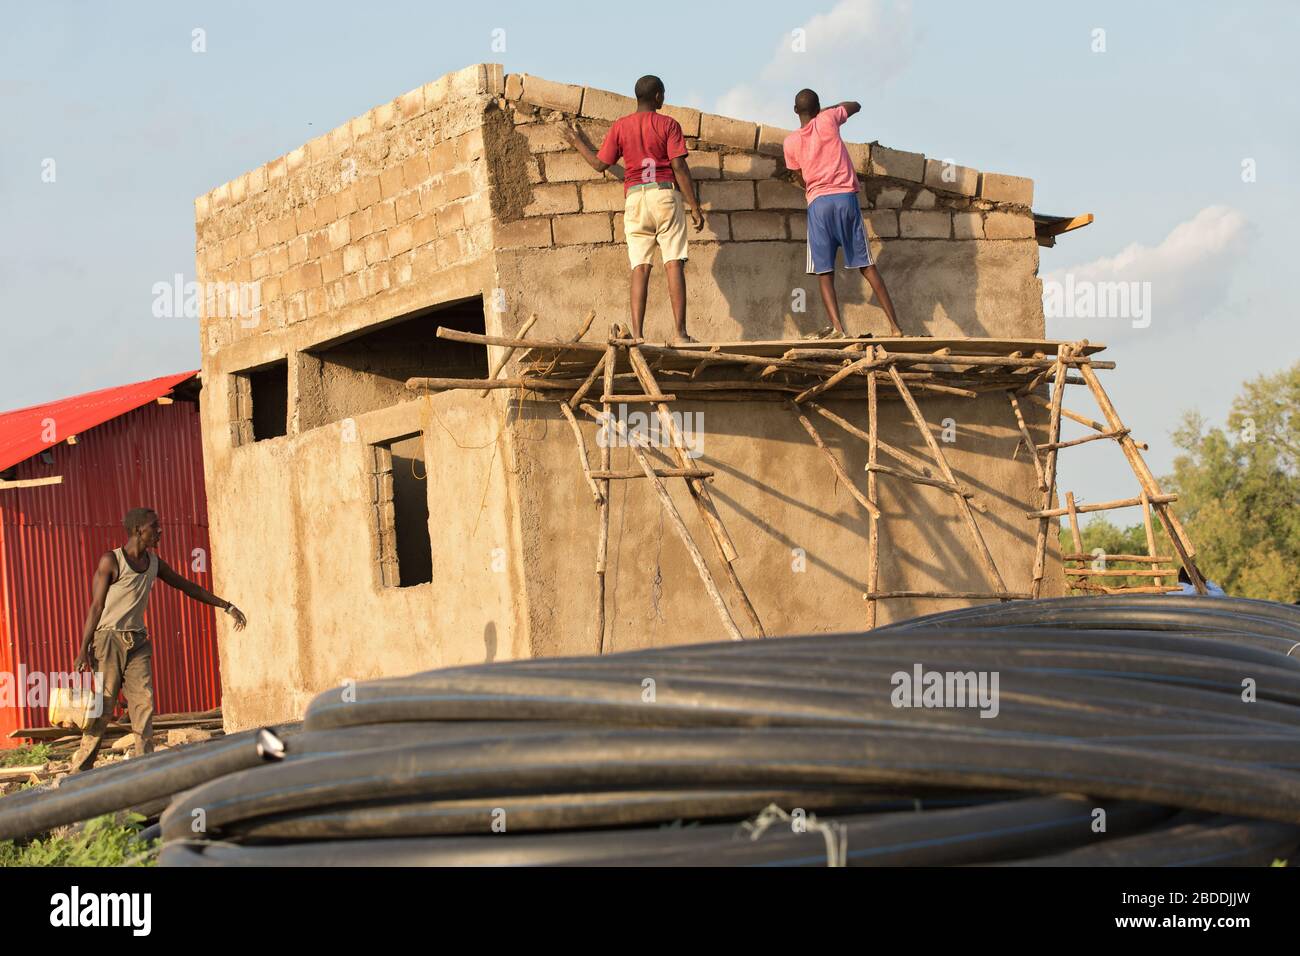 11.11.2019, Burferedo, région somalienne, Ethiopie - les travailleurs de la construction se tiennent sur un cadre en bois non sécurisé et ont établi des briques en béton. Au premier plan ro Banque D'Images